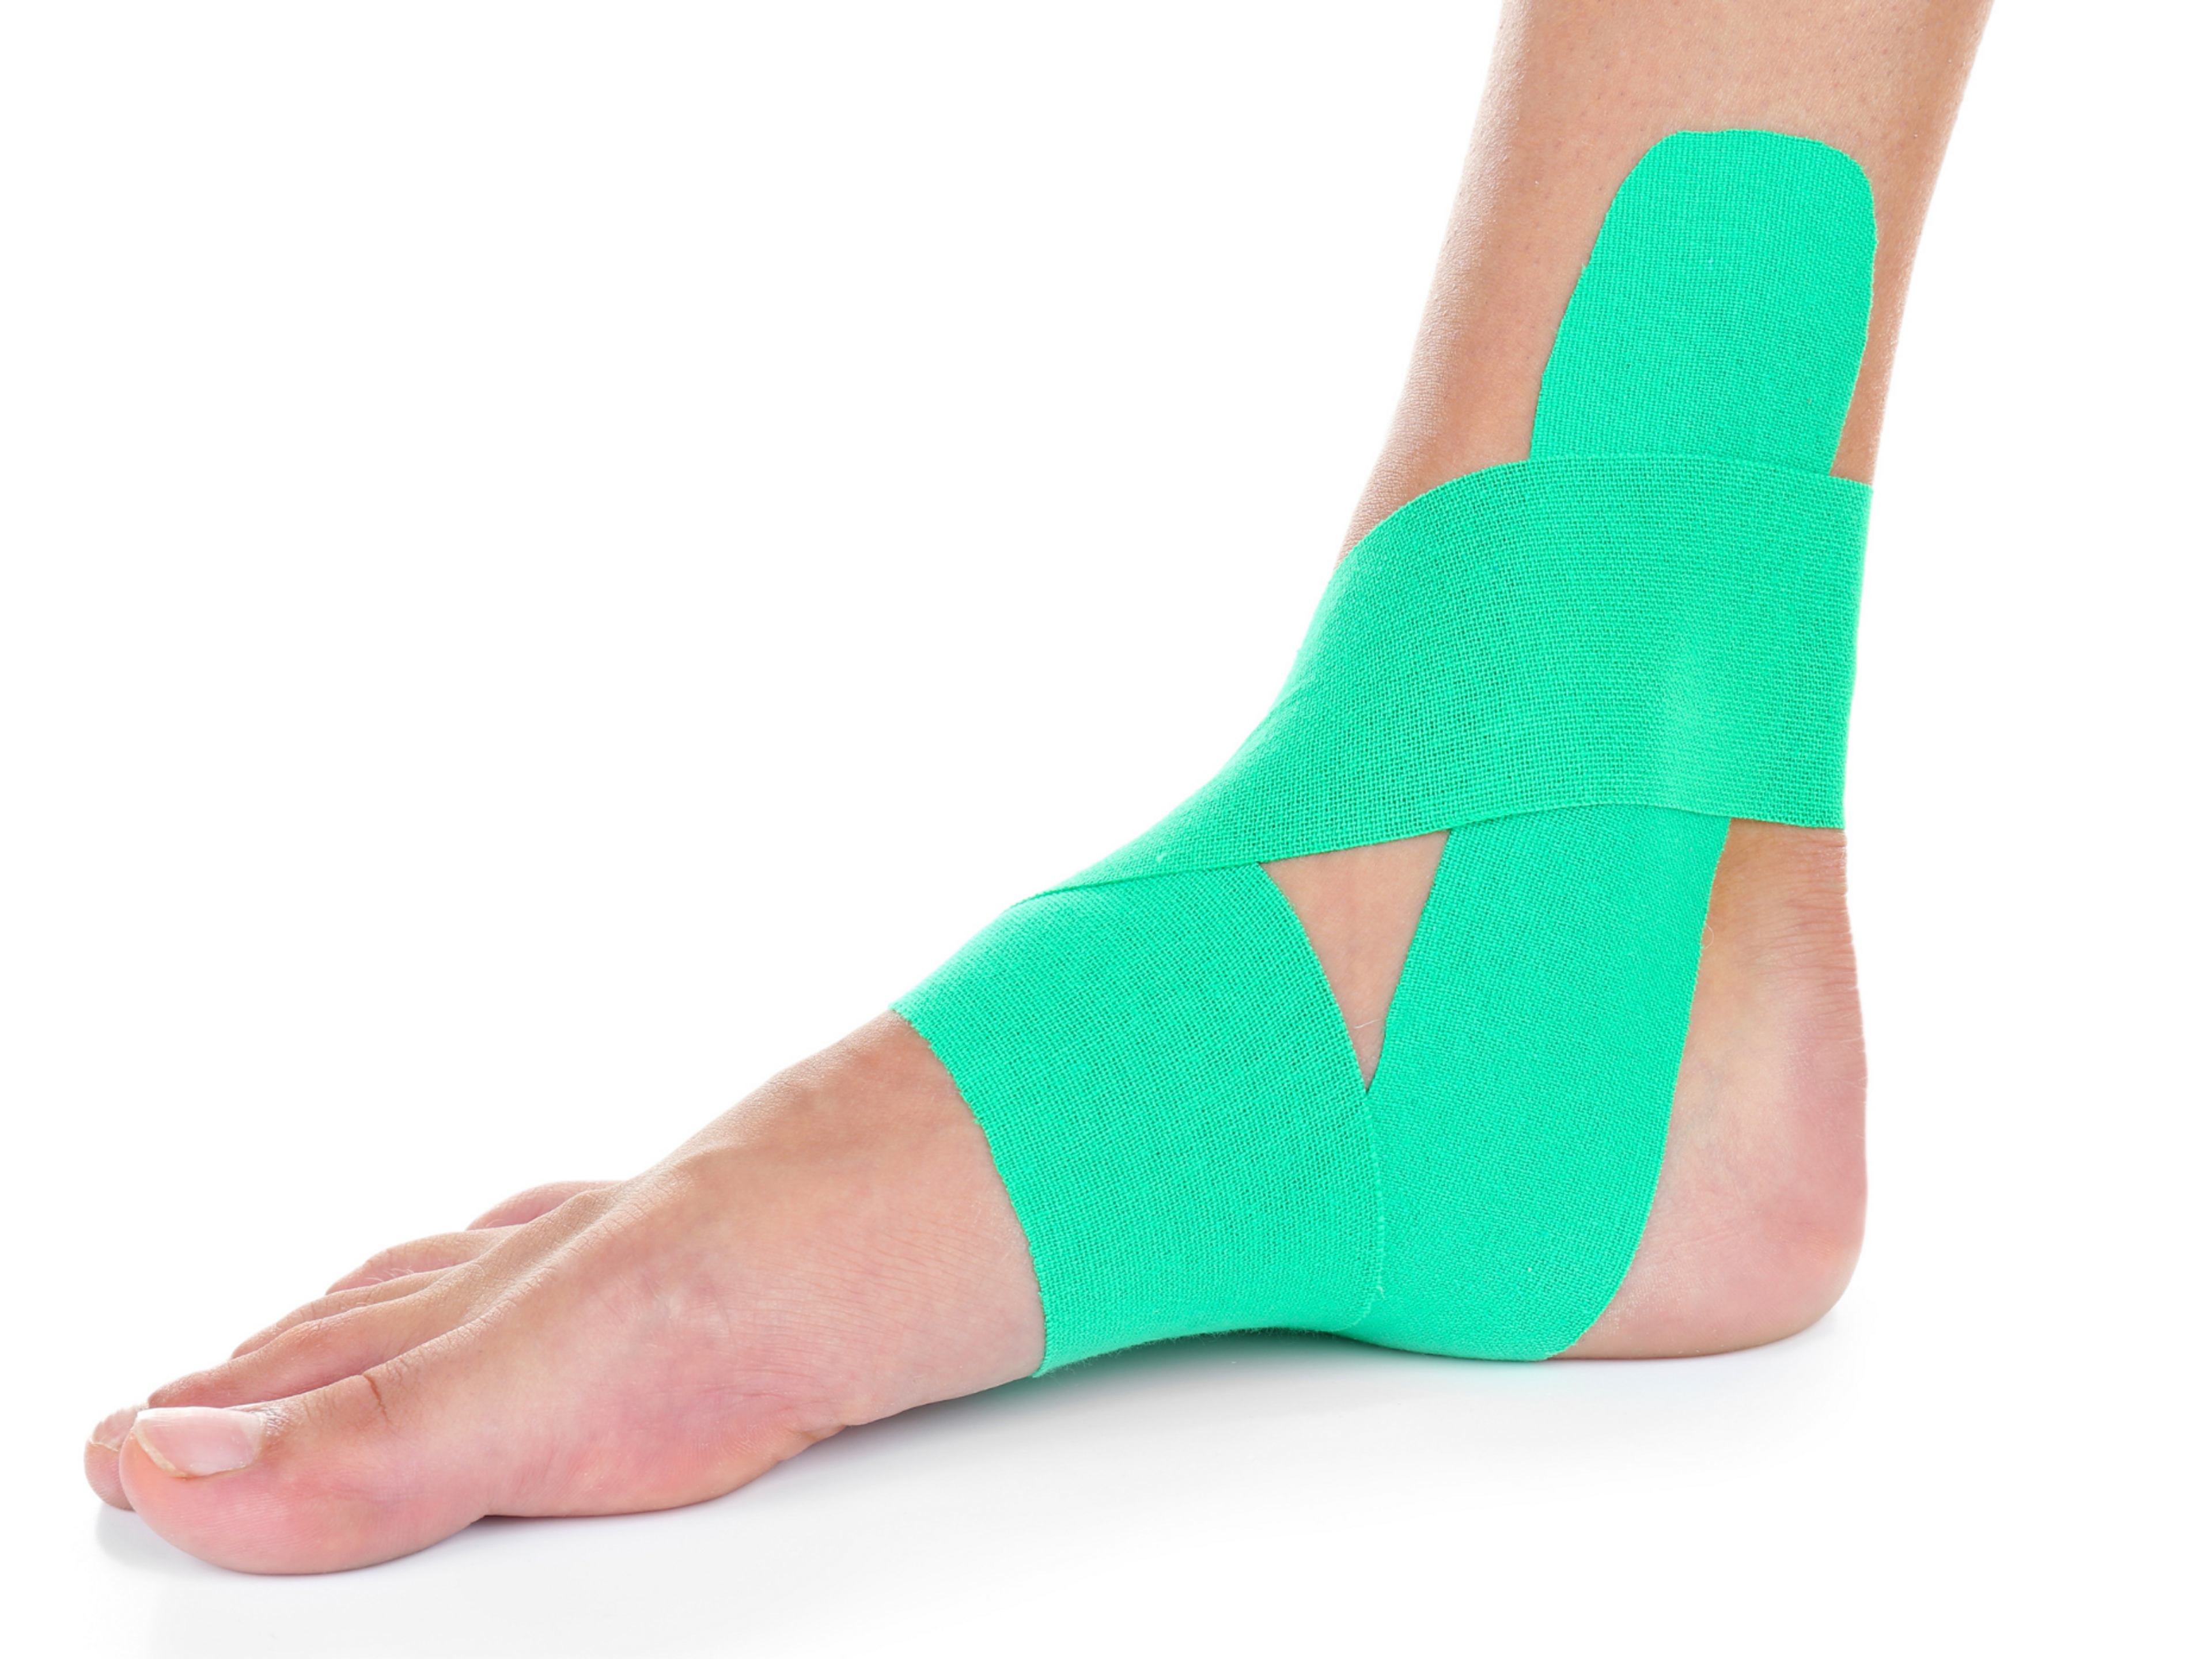 Deinen Fuß zu tapen kann helfen, die Schmerzen zu lindern So kannst du deine Plantarfasziitis auch zuhause behandeln. Das Bild zeigt eine Kinesio-Technik. Low-Dye-Techniken funktionieren jedoch eventuell besser.